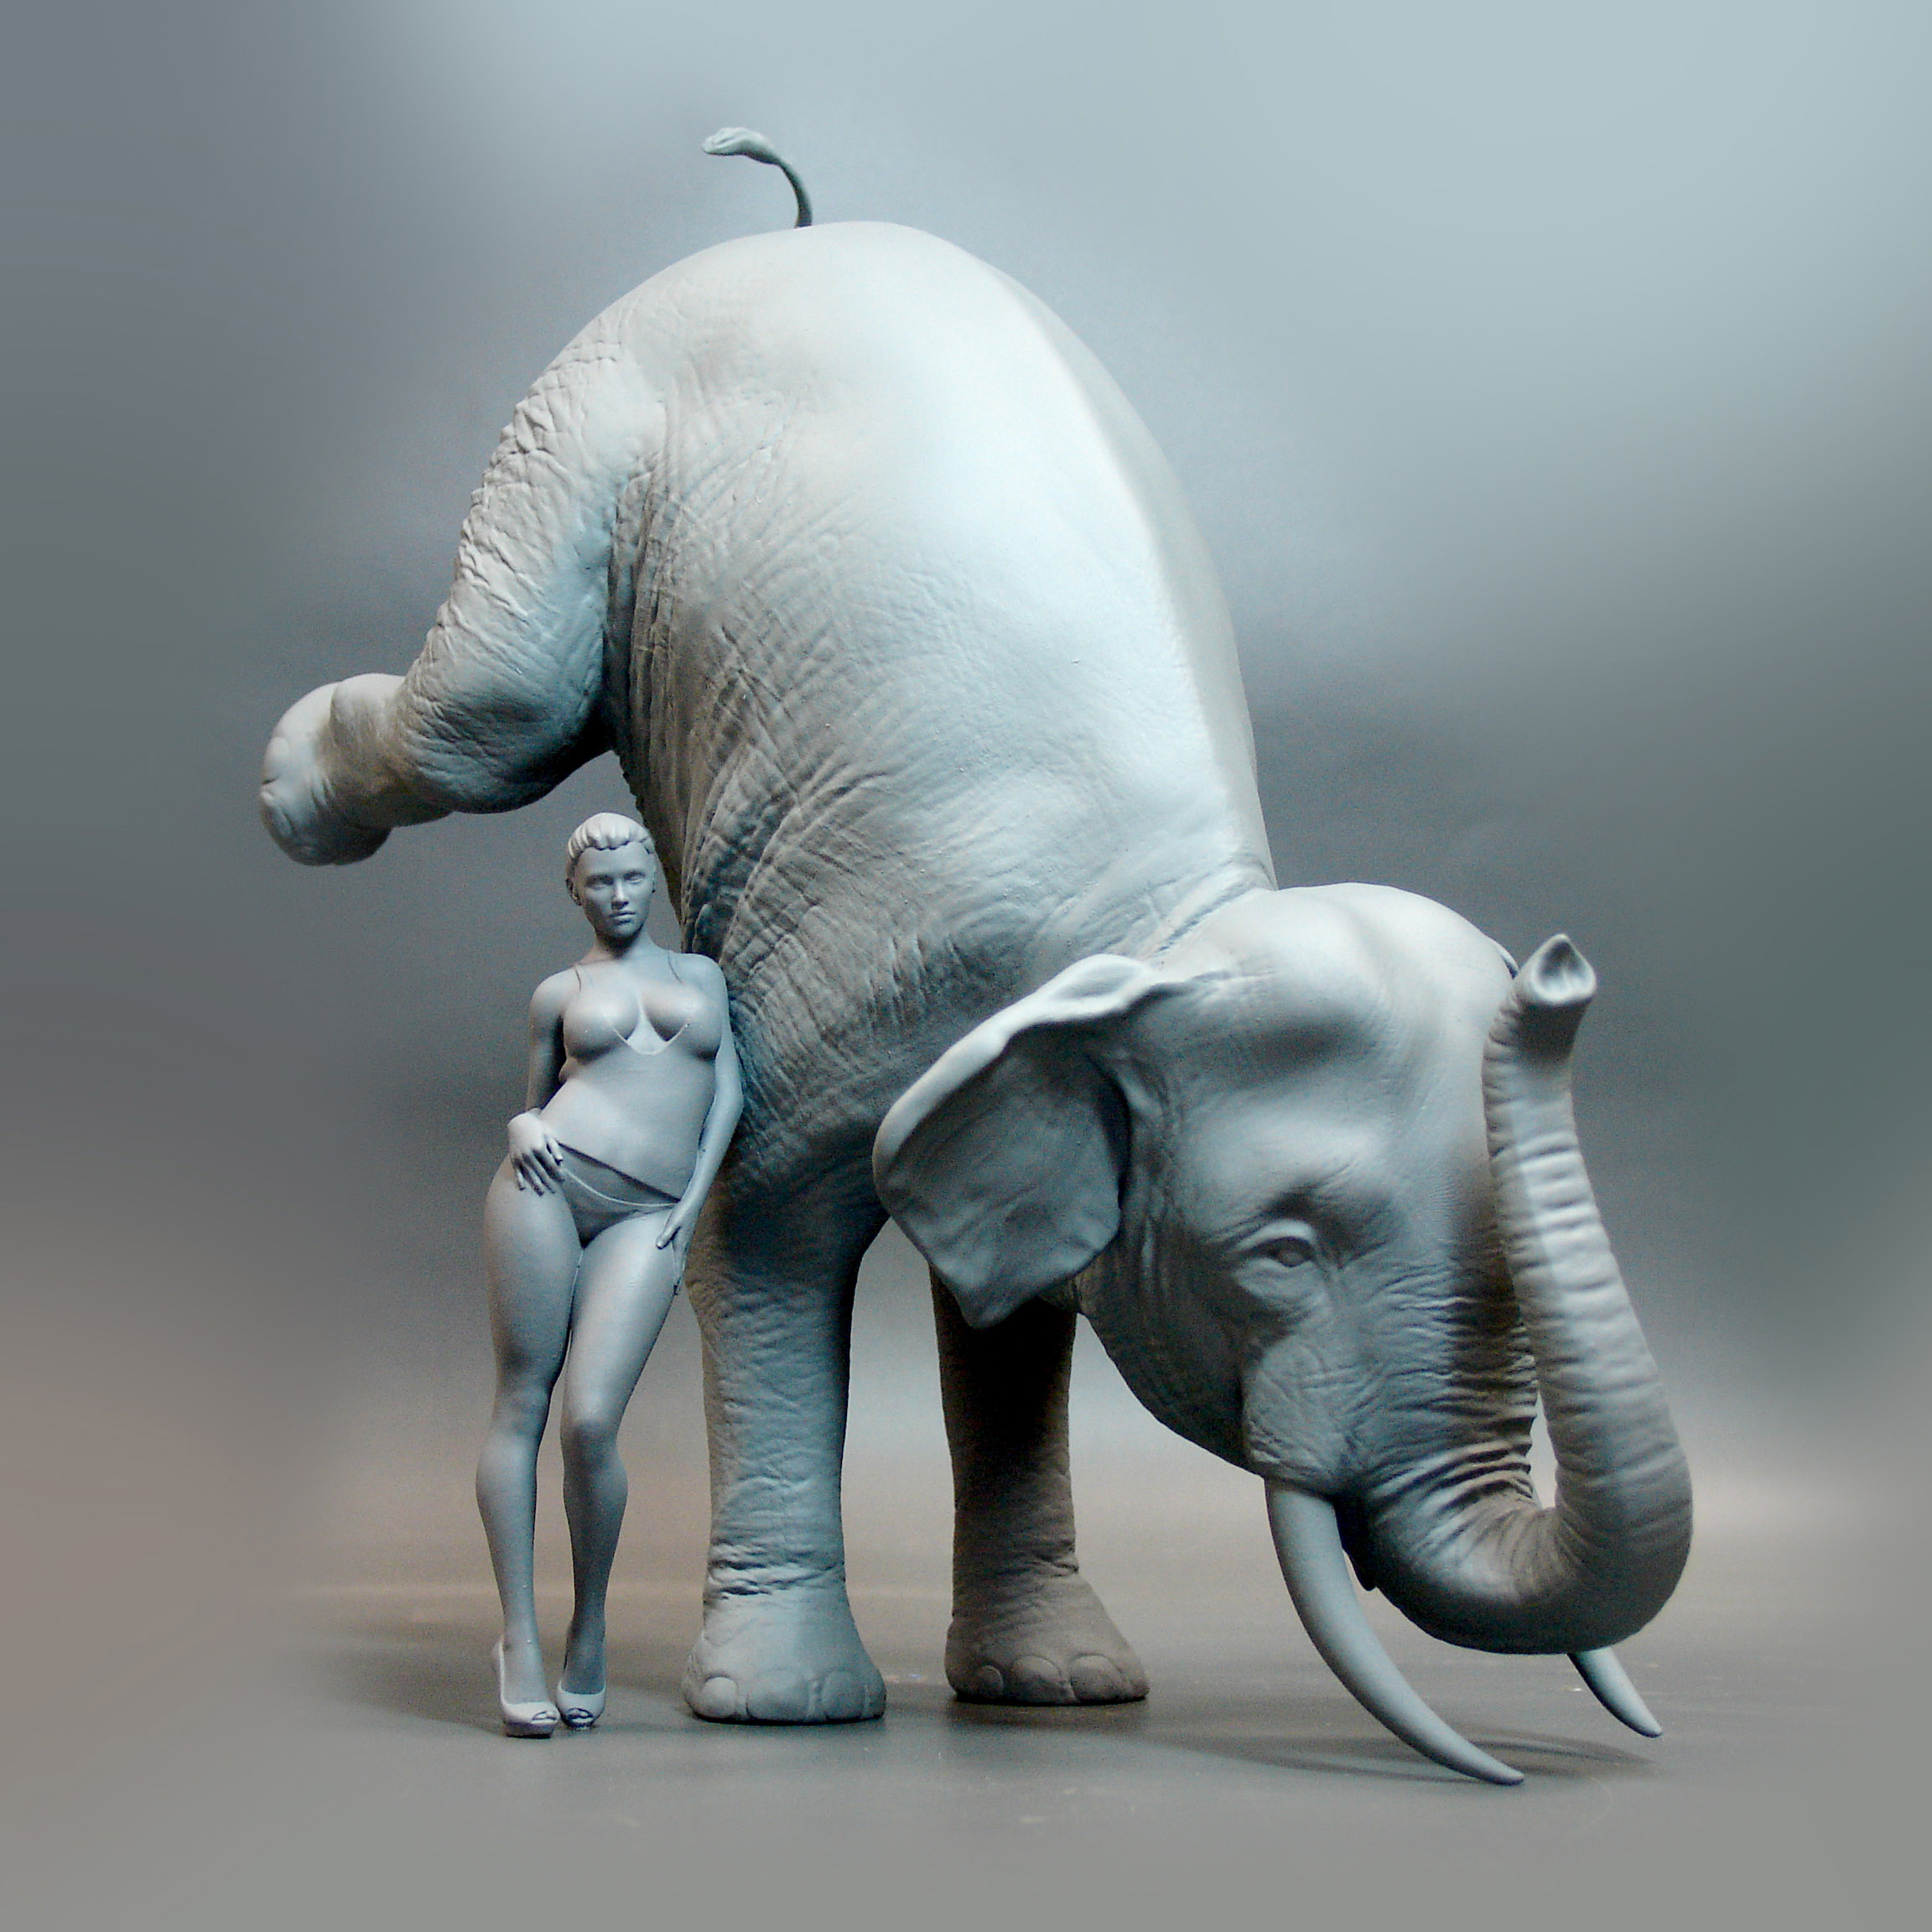 slon, слон, фотополимер, 3dprint, 3dпечать